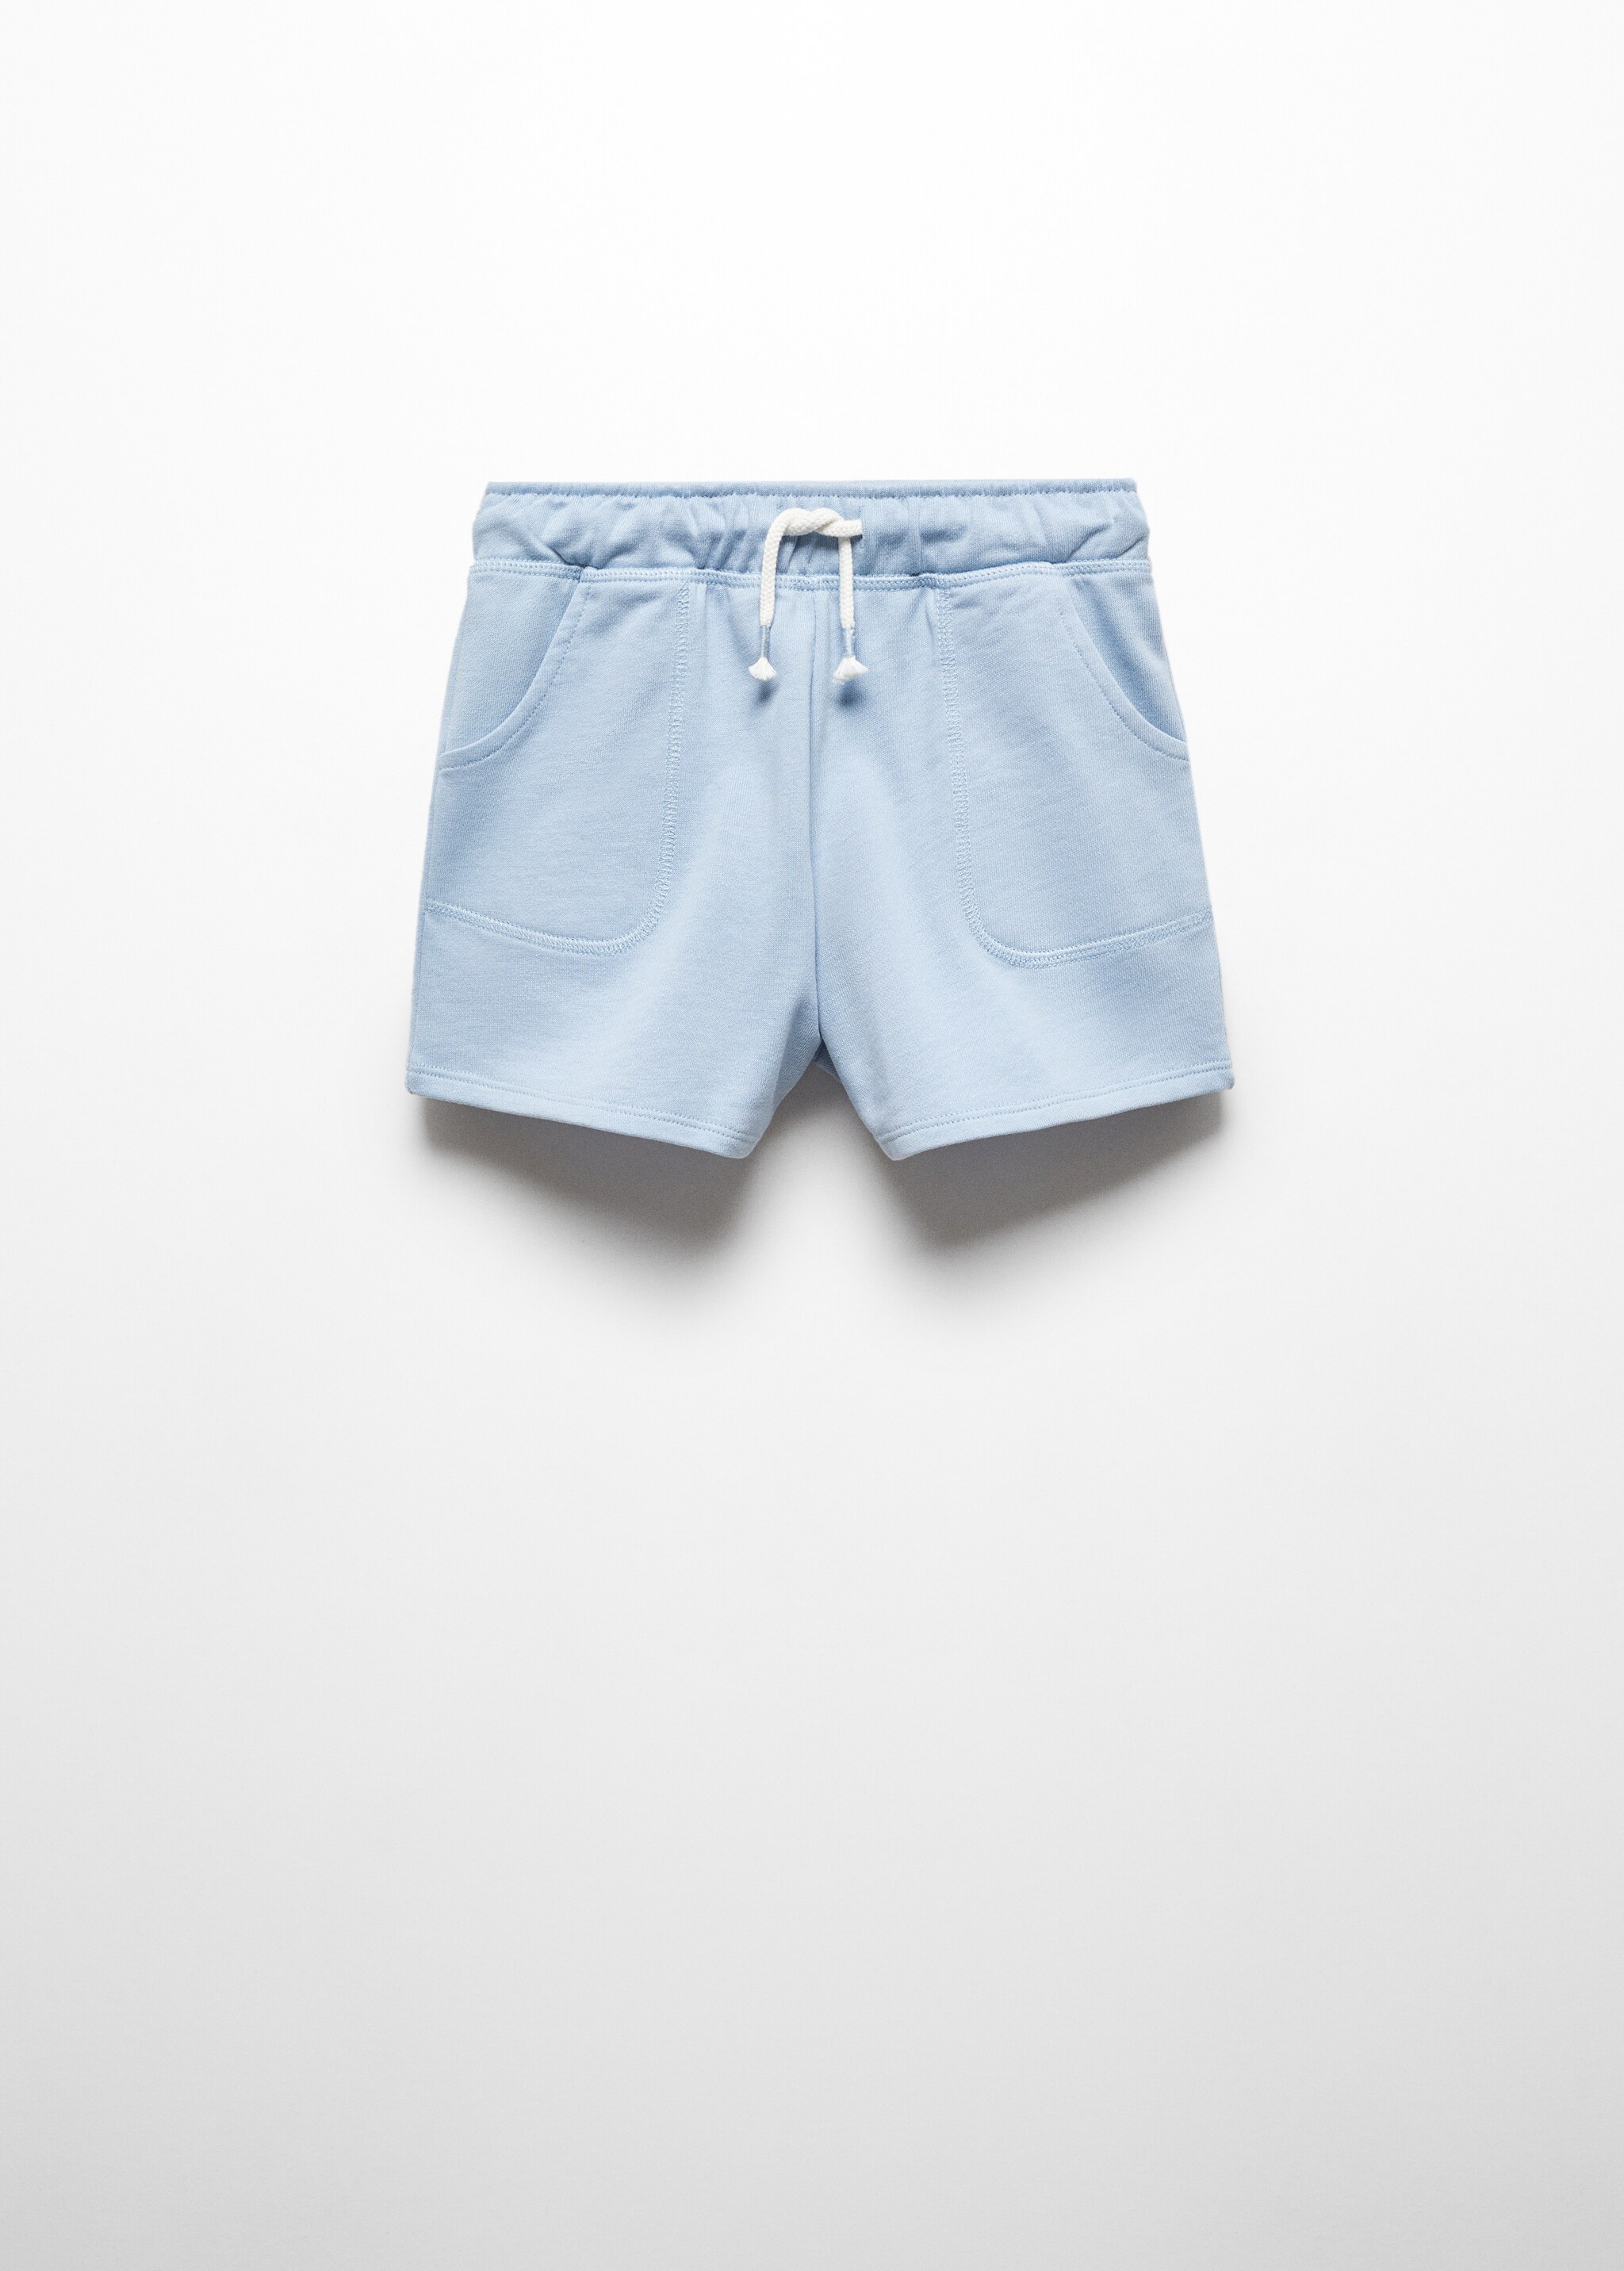 Short algodón cintura elástica - Artículo sin modelo